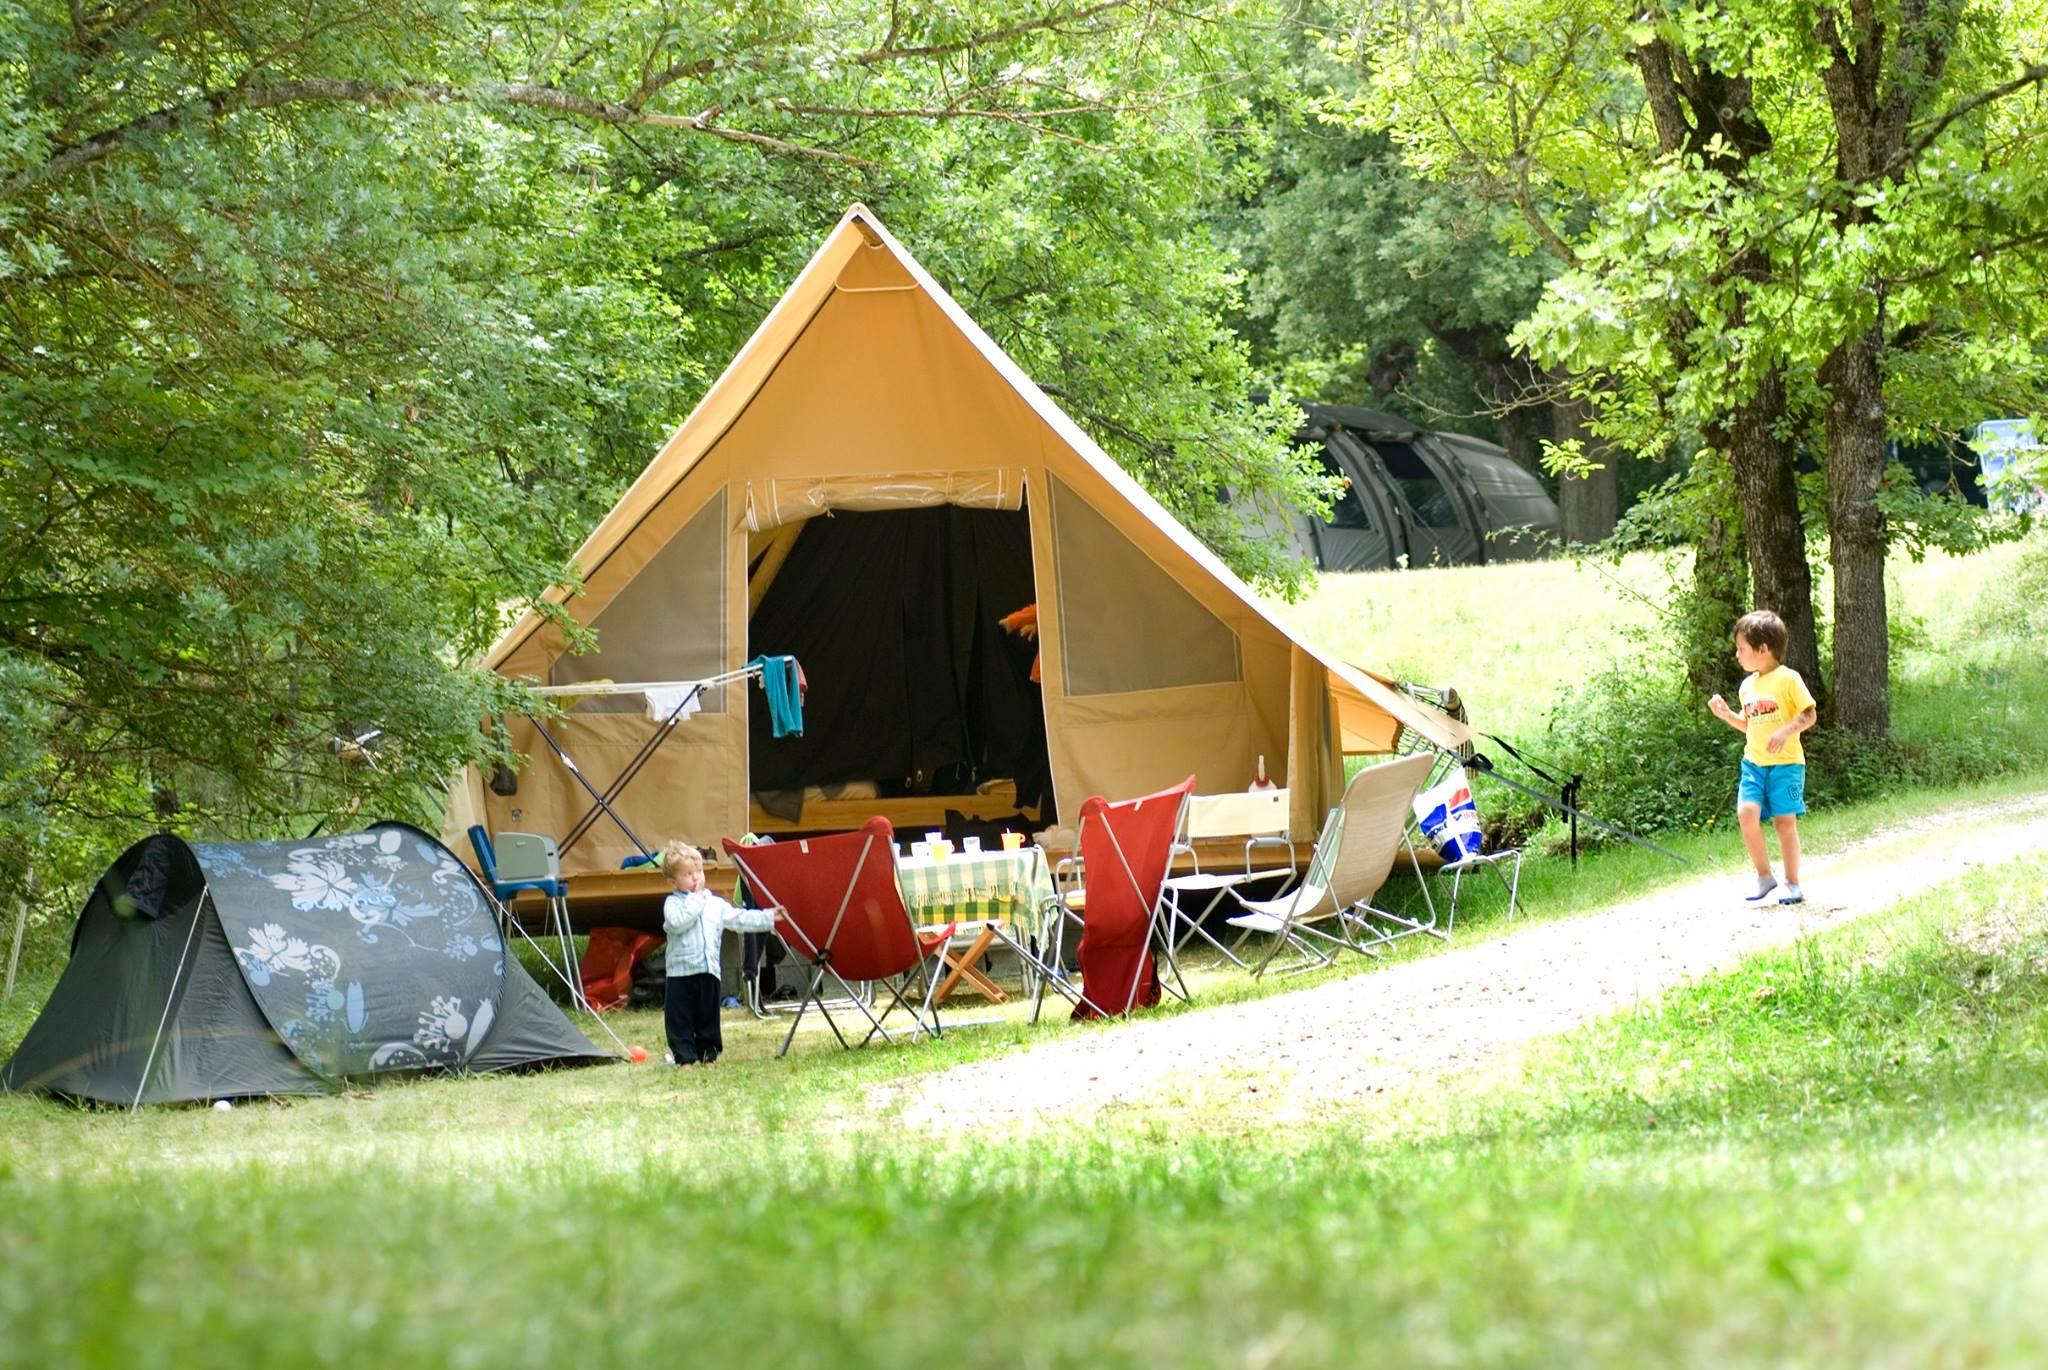 Accommodation - Tente Lodge Trappeur 'Toile Et Bois' - Camping La Ferme de Clareau